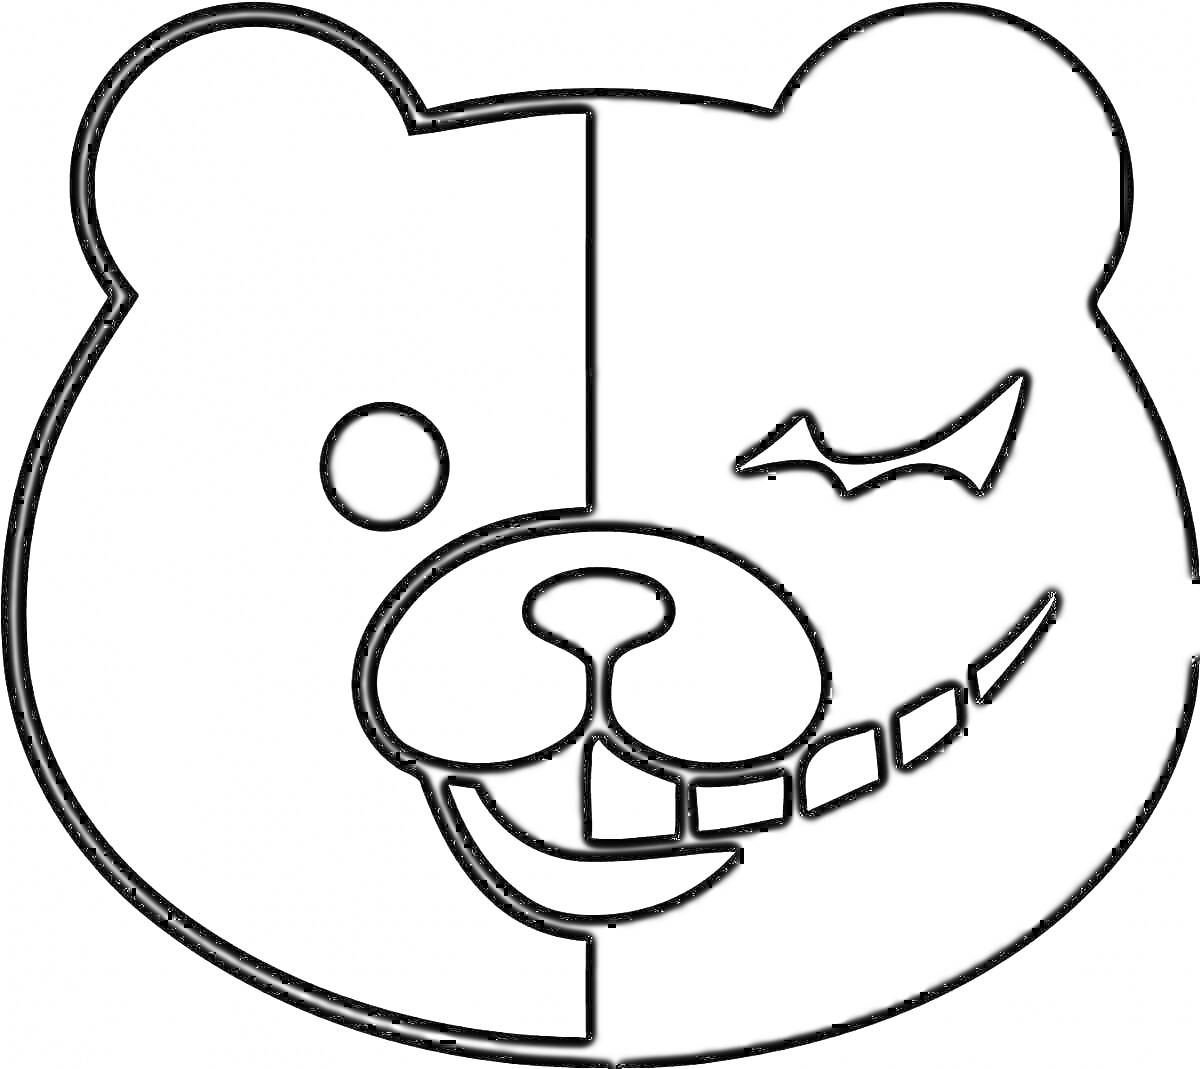 Раскраска Лицо Монокумы с разделением на черную и белую половину с разной мимикой (один глаз круглый, другой в виде полумесяца, половина улыбающегося рта с зубами)